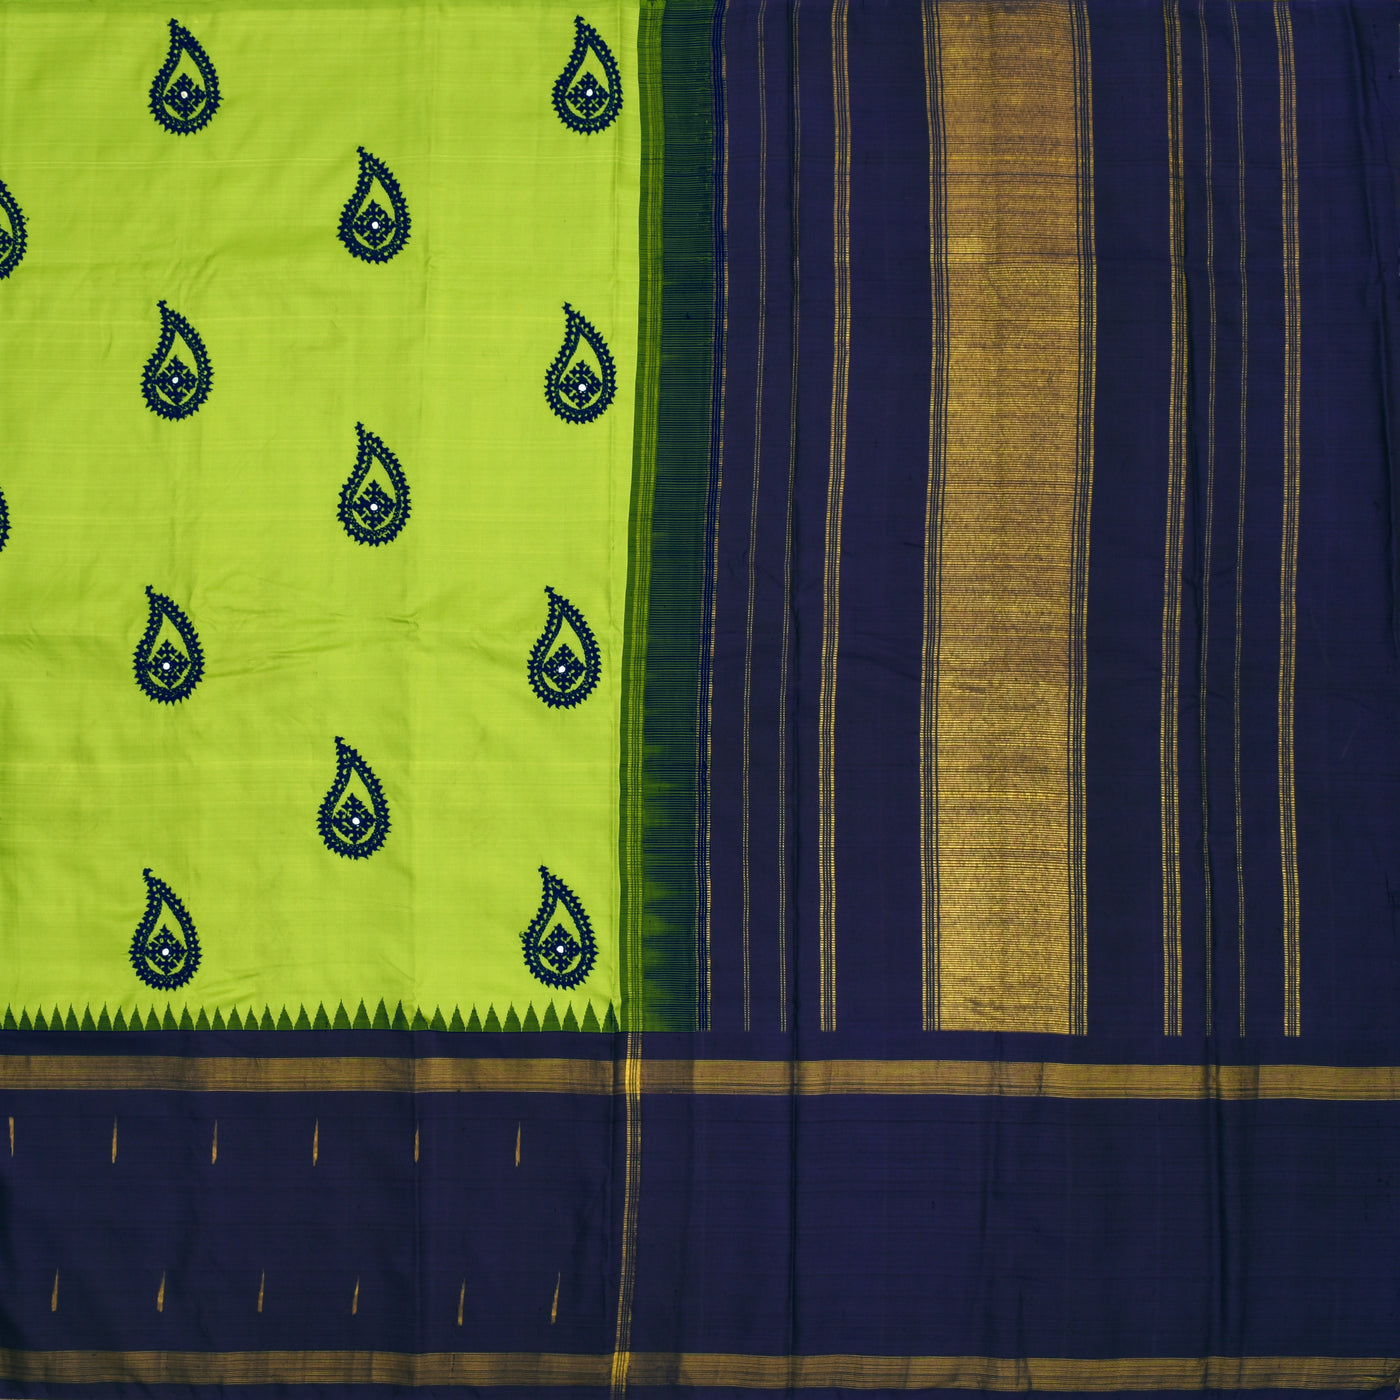 Samaga Green Printed Kanchi Silk Saree with Kutch Work Design